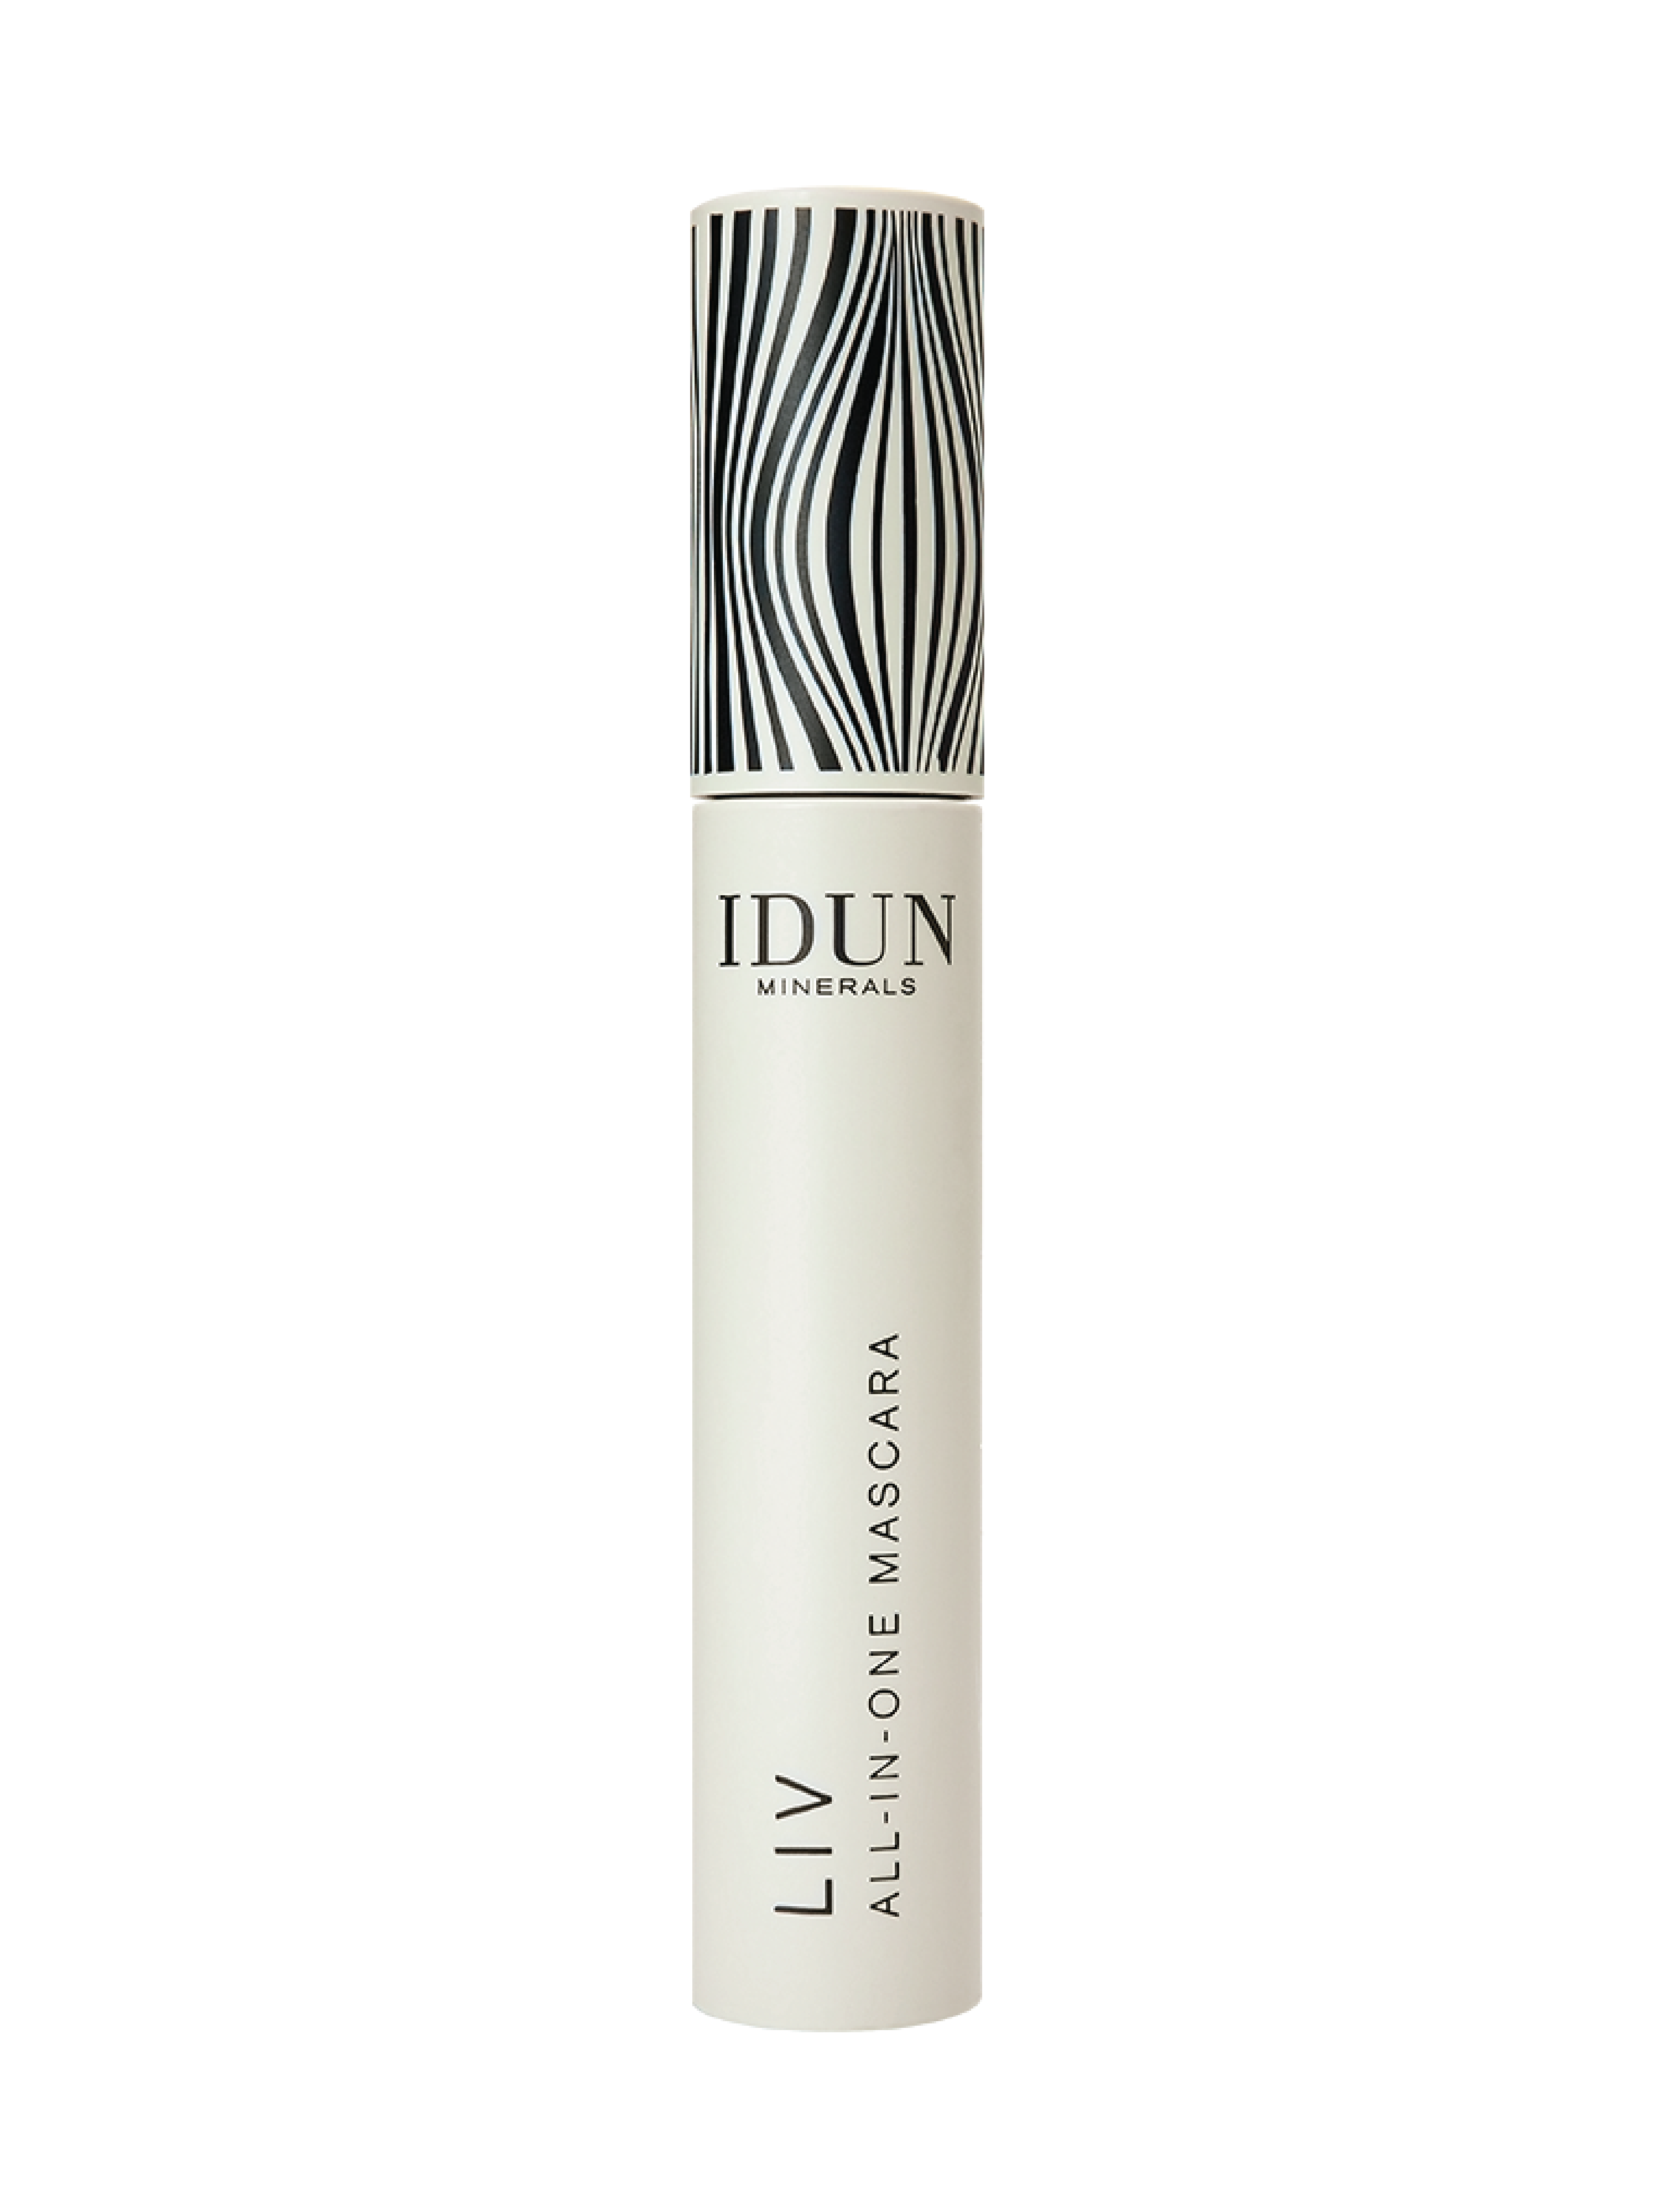 IDUN Minerals Mascara LIV Black, 12,5 ml